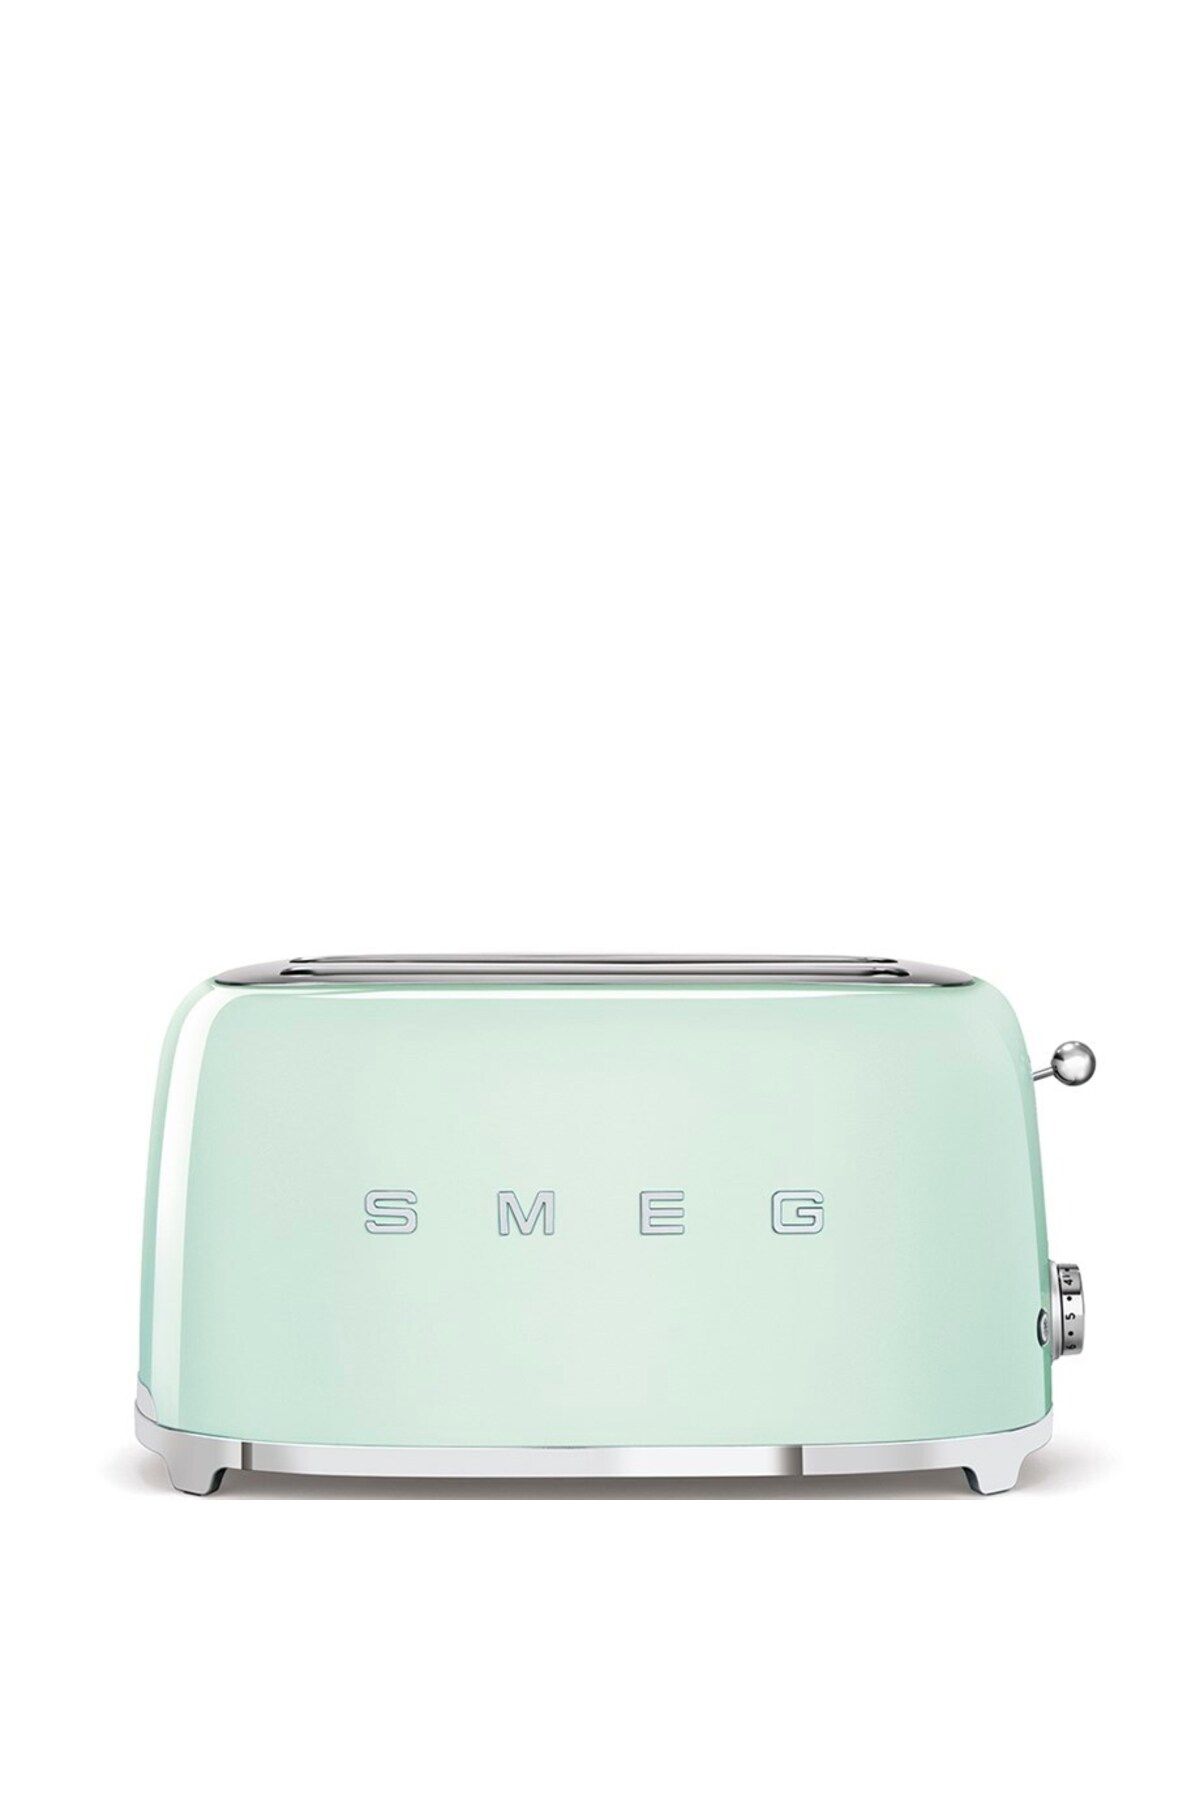 Smeg Yeşil Ekmek Kızartma Makinesi 2x4